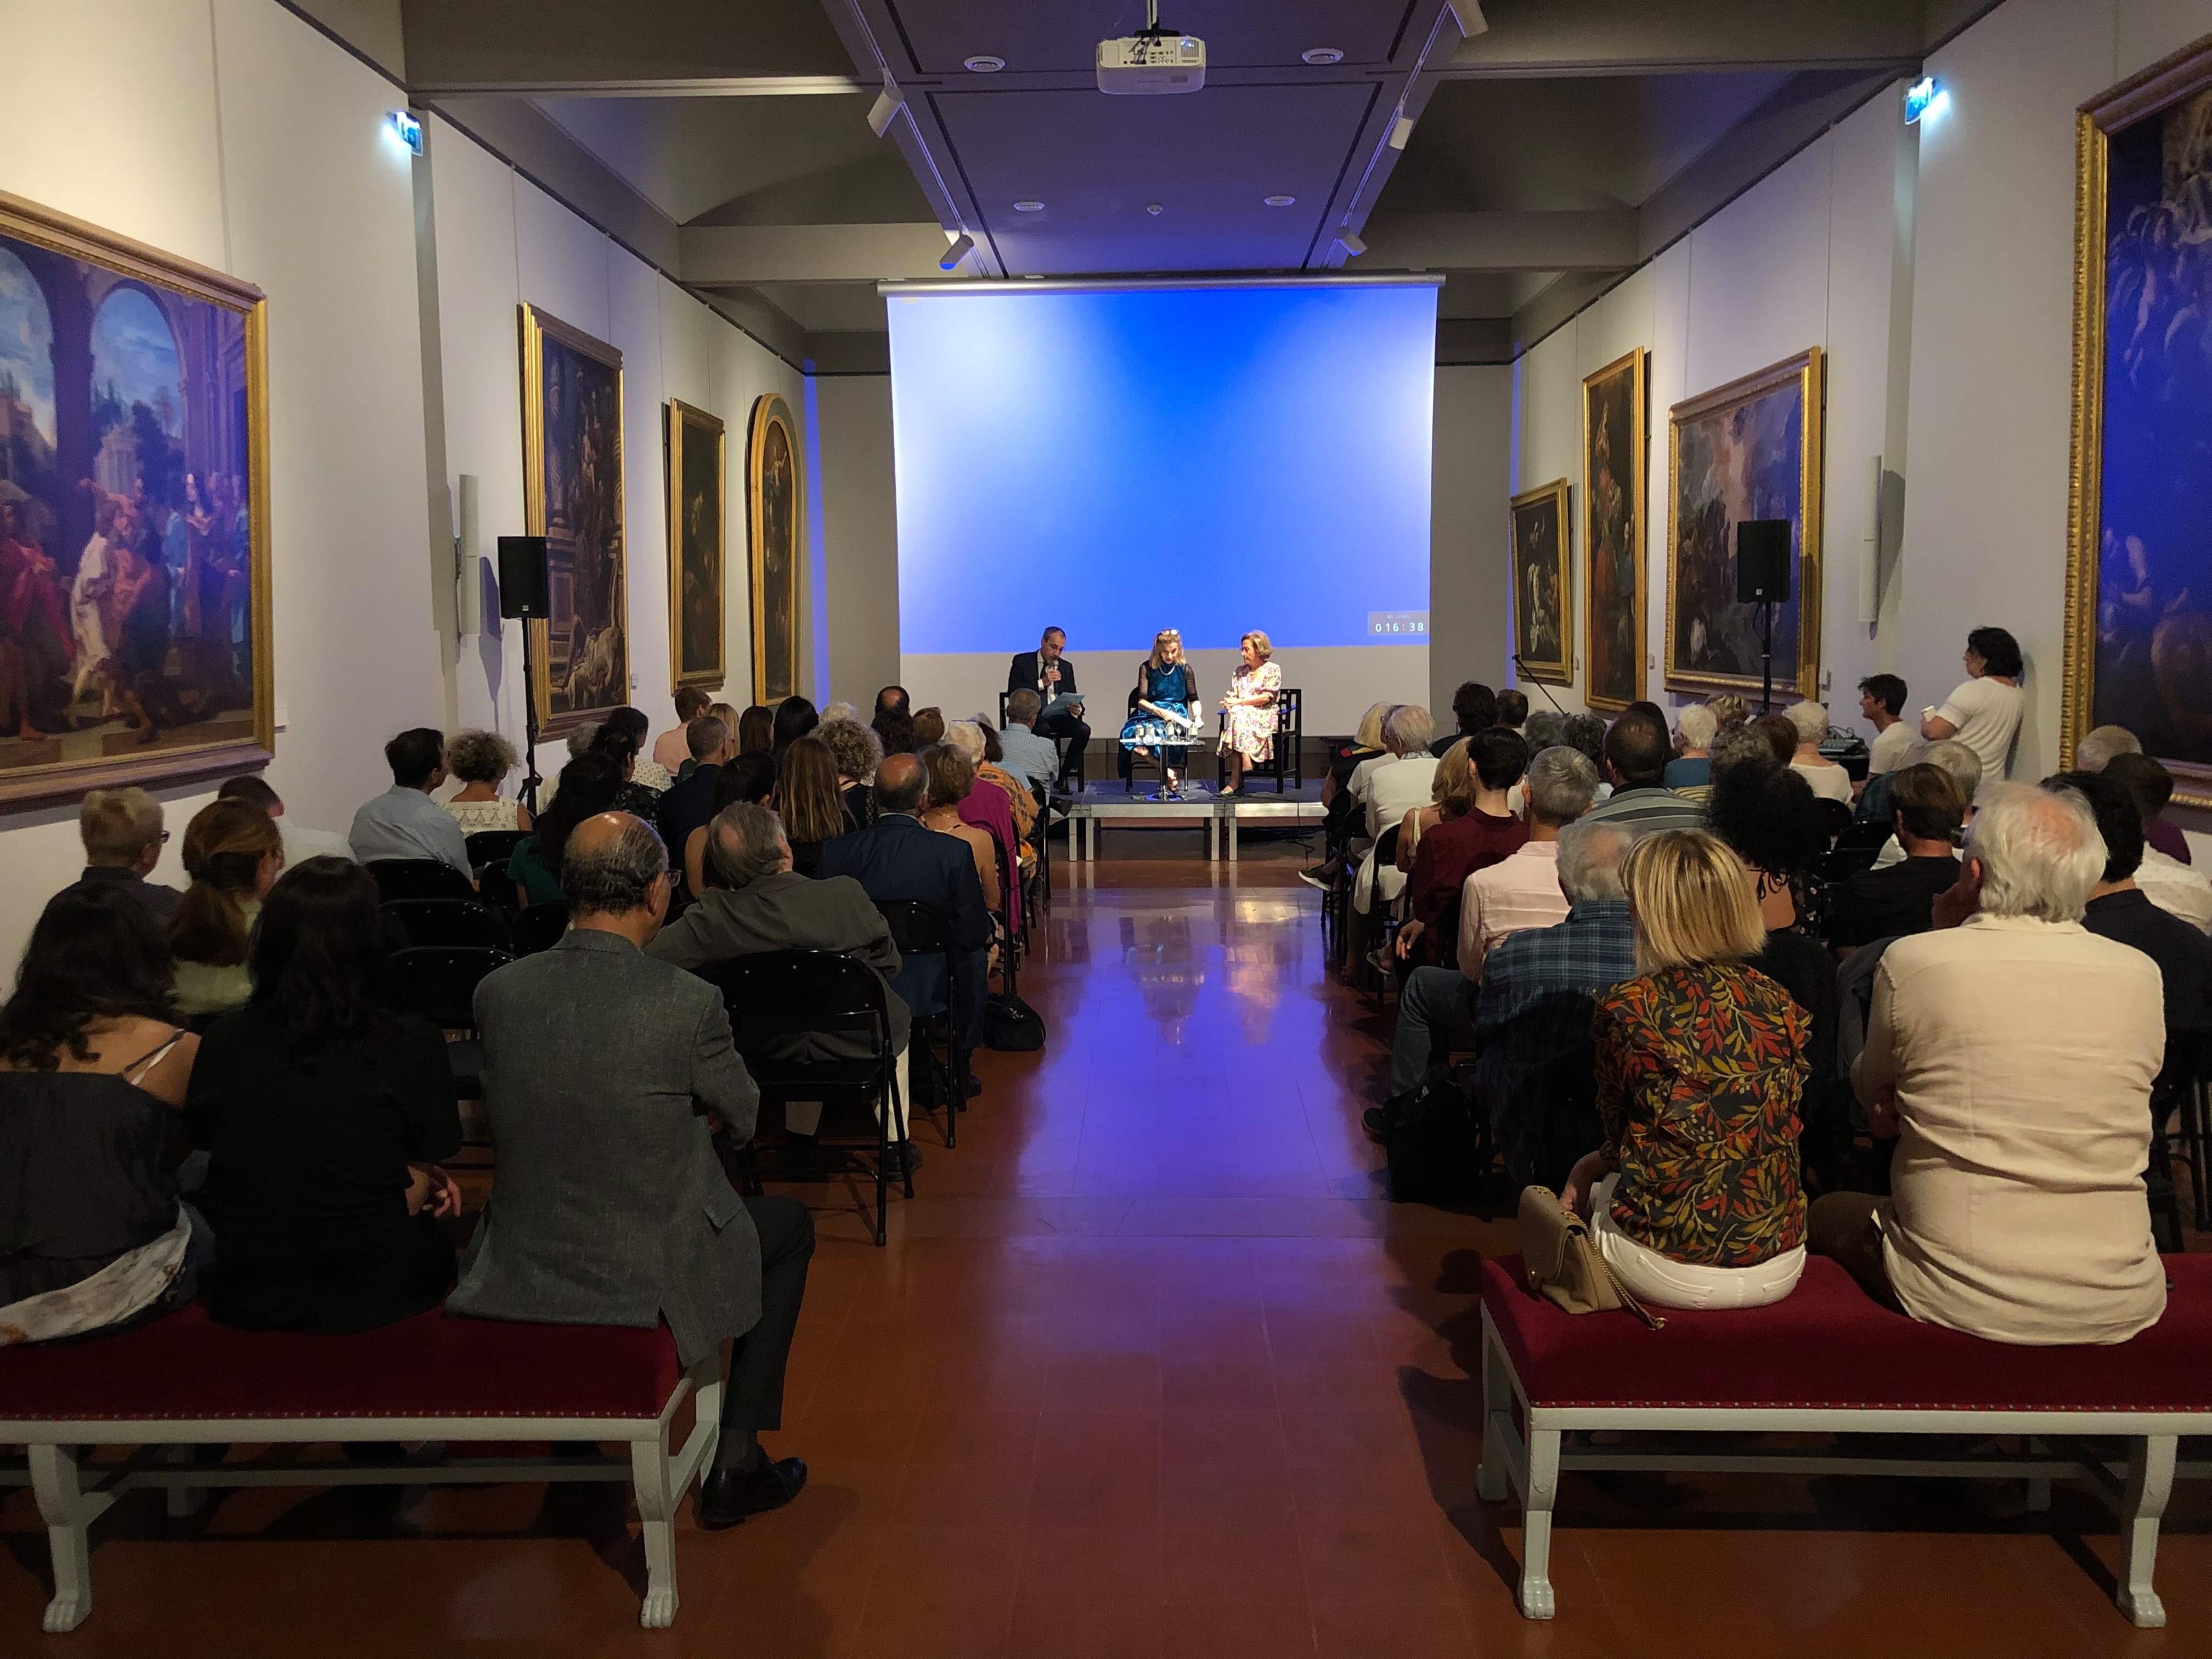 Ouverture des rencontres littéraires méditerranéennes "Racines de ciel"